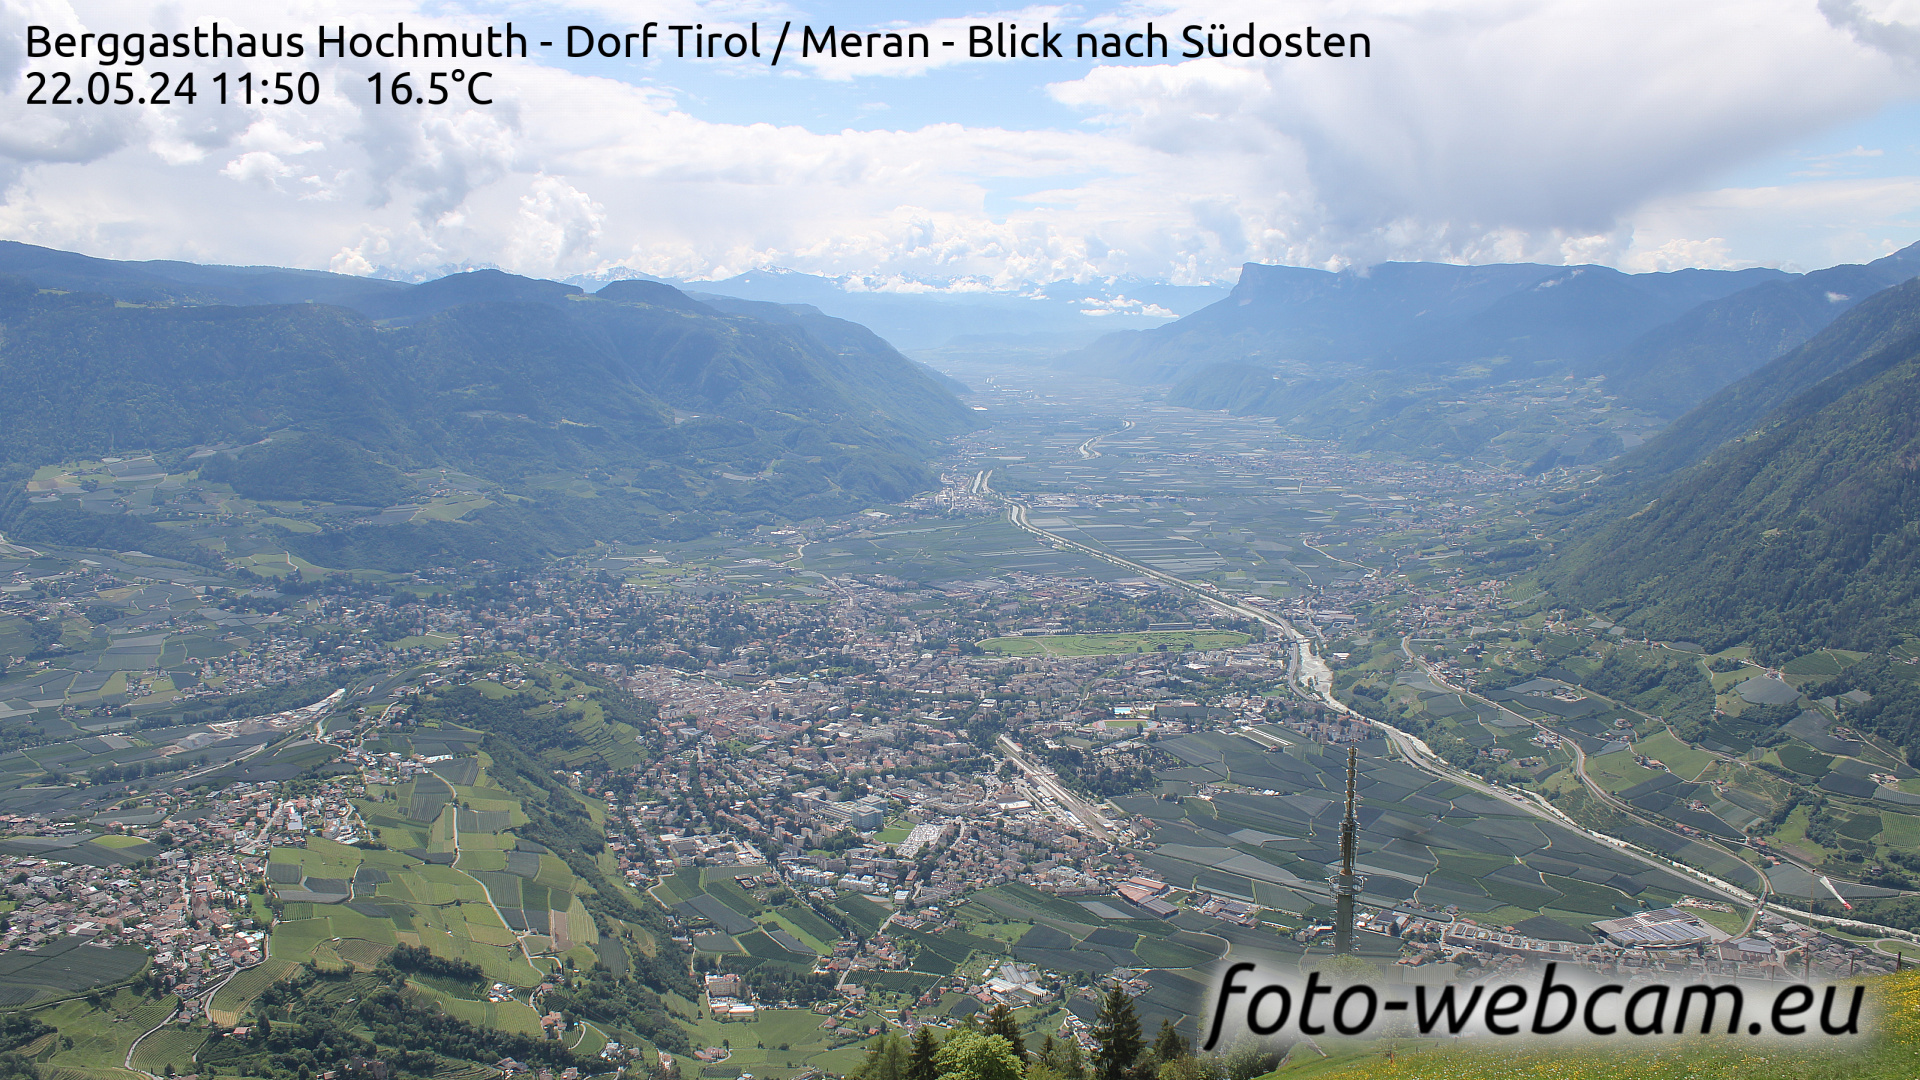 Dorf Tirol Di. 11:56